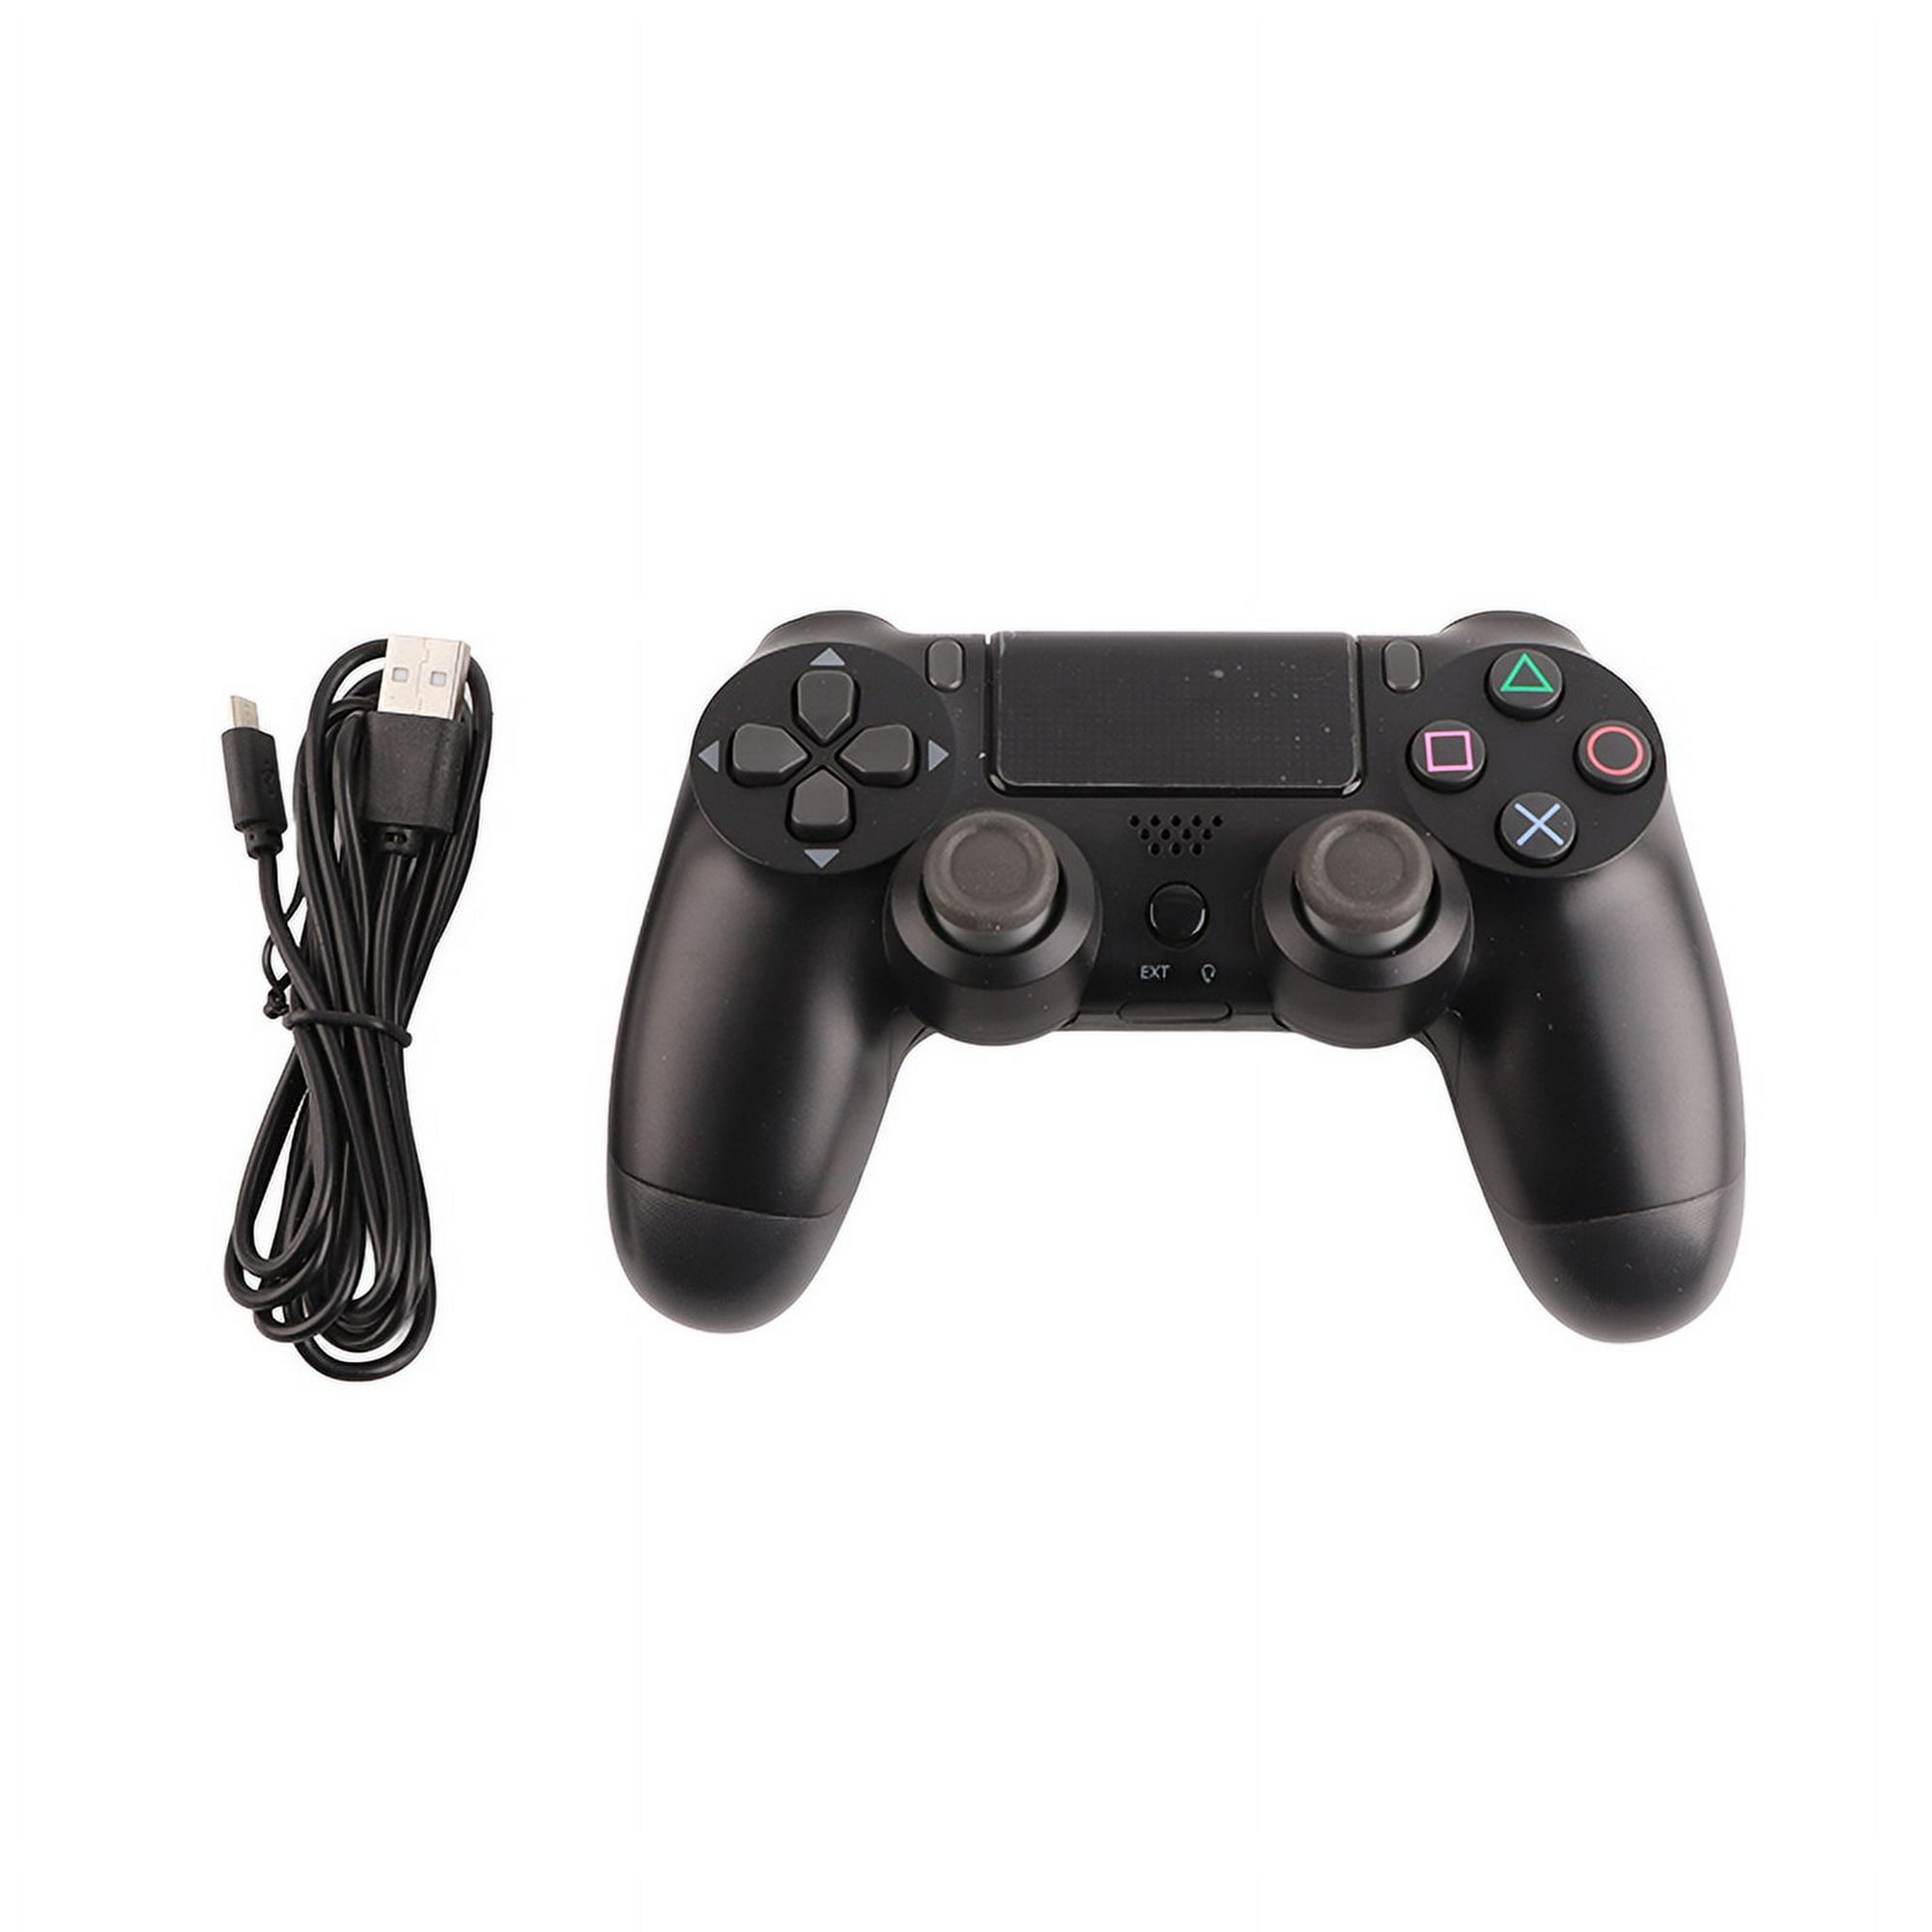 Ya es posible utilizar el mando de PS4 en PS3 sin cables, Lifestyle, SmartLife